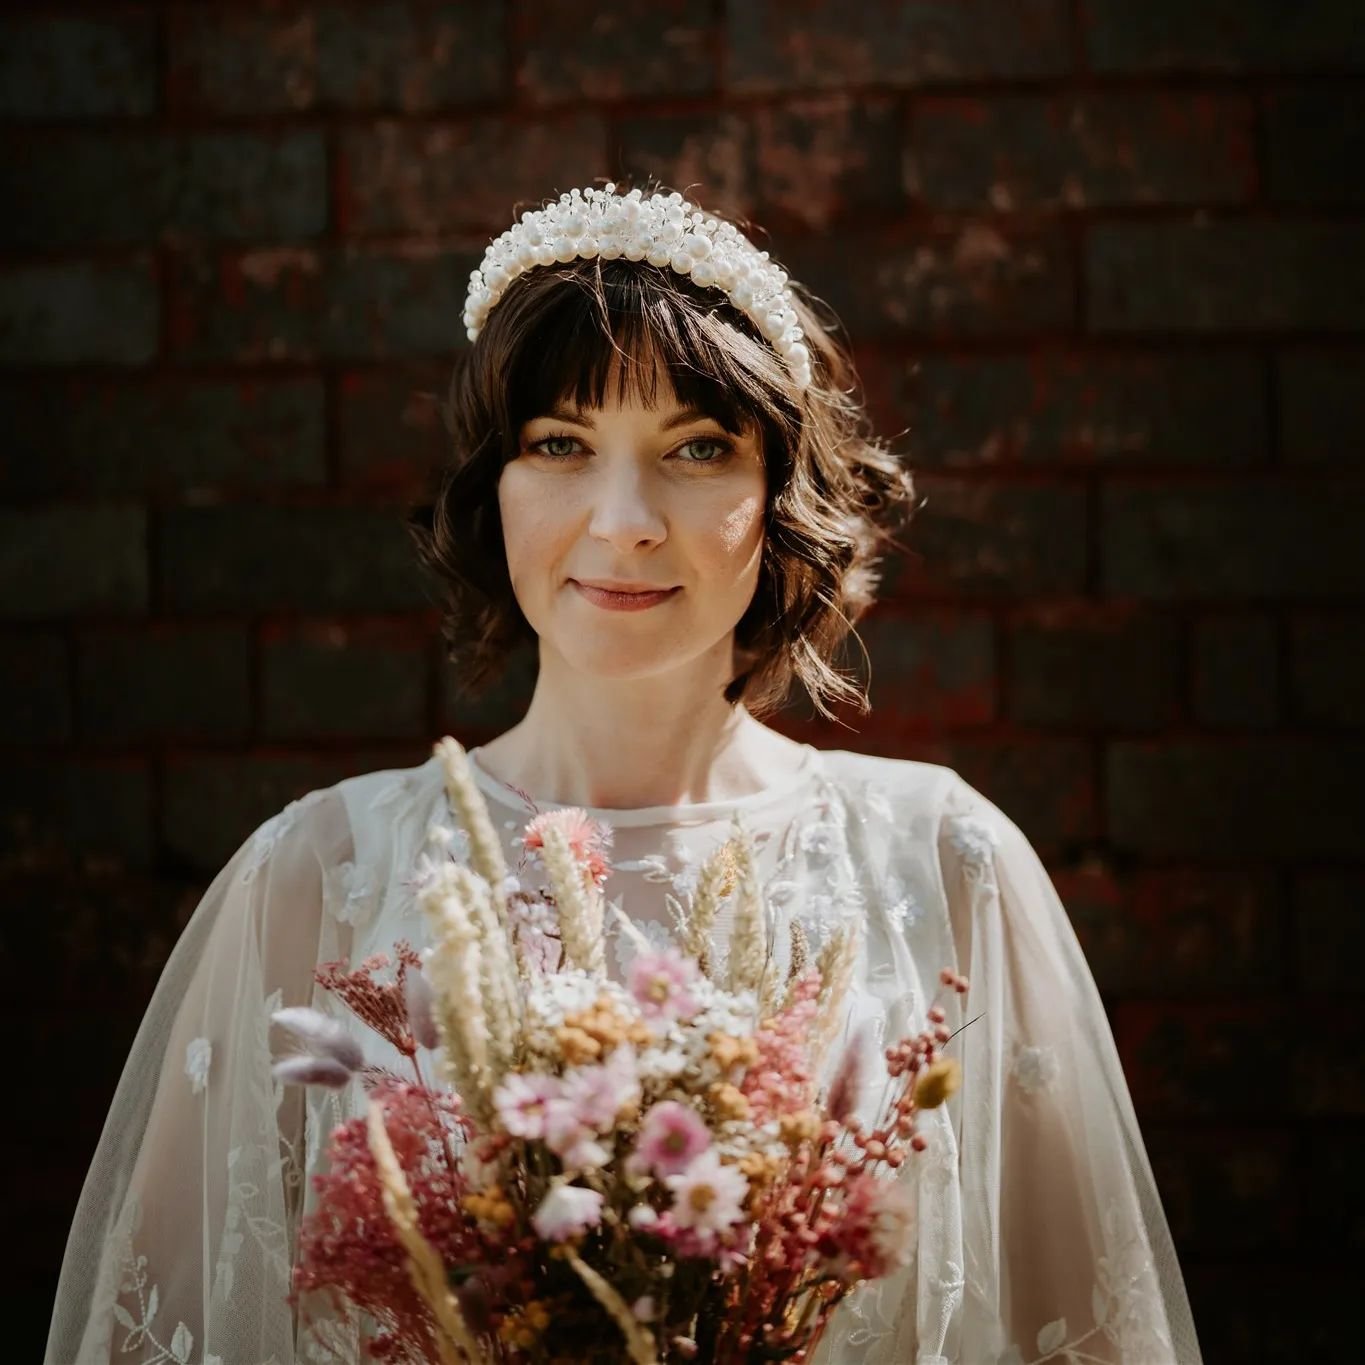 Last week's beautiful Bride, Kate ❤️